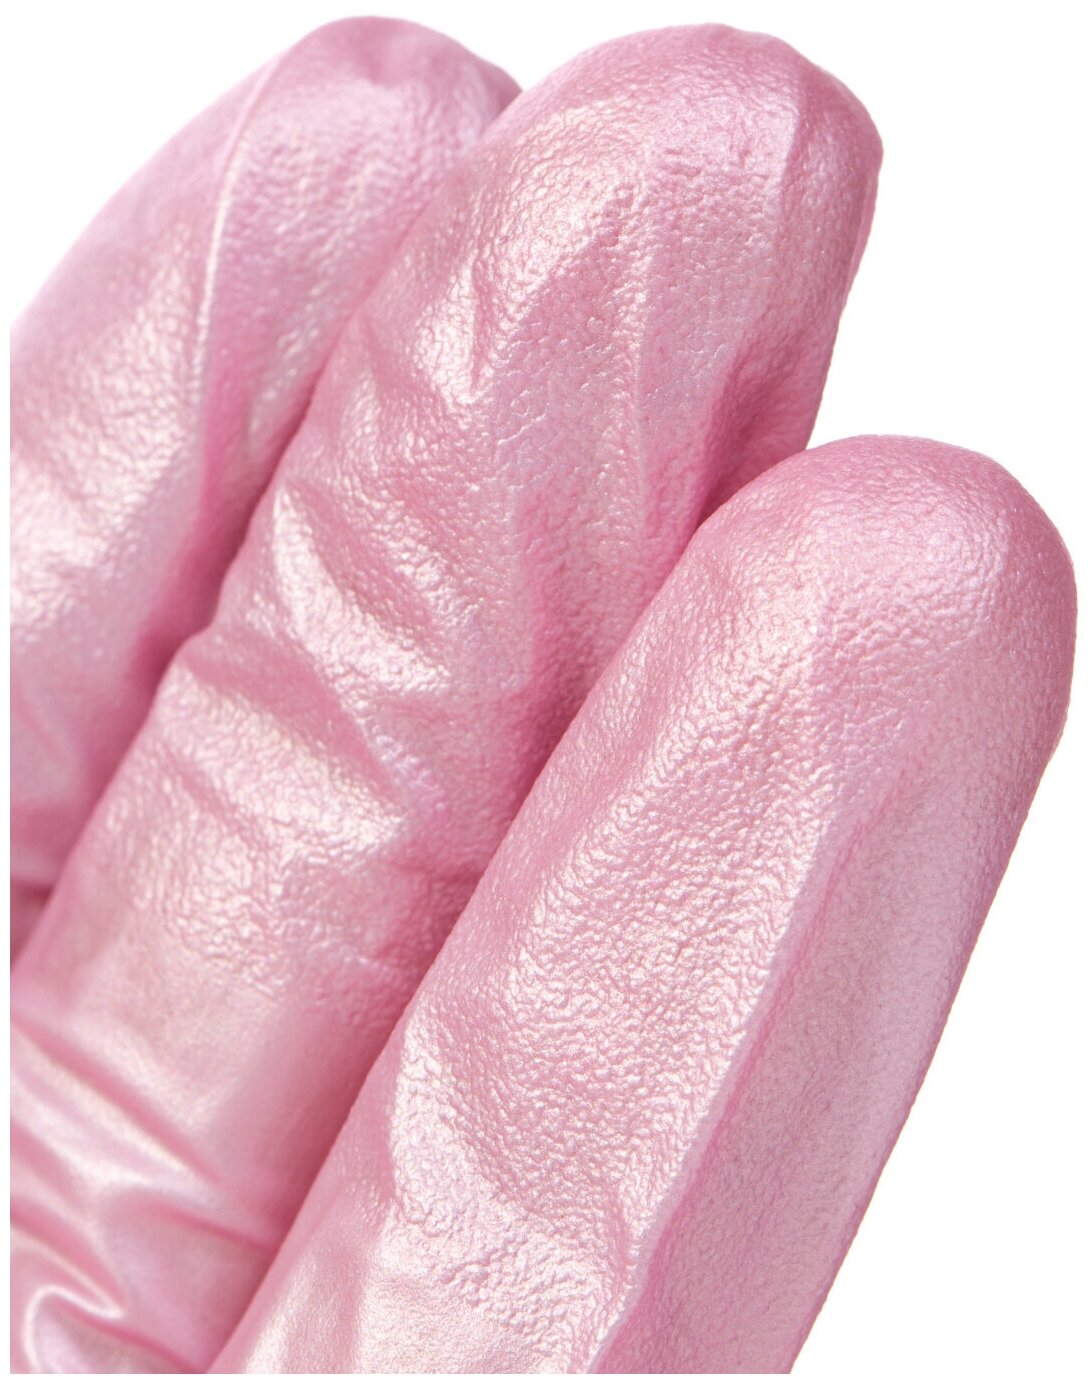 Перчатки Archdale Adele одноразовые нитриловые, 50 пар, размер S, цвет розовый перламутр - фотография № 3